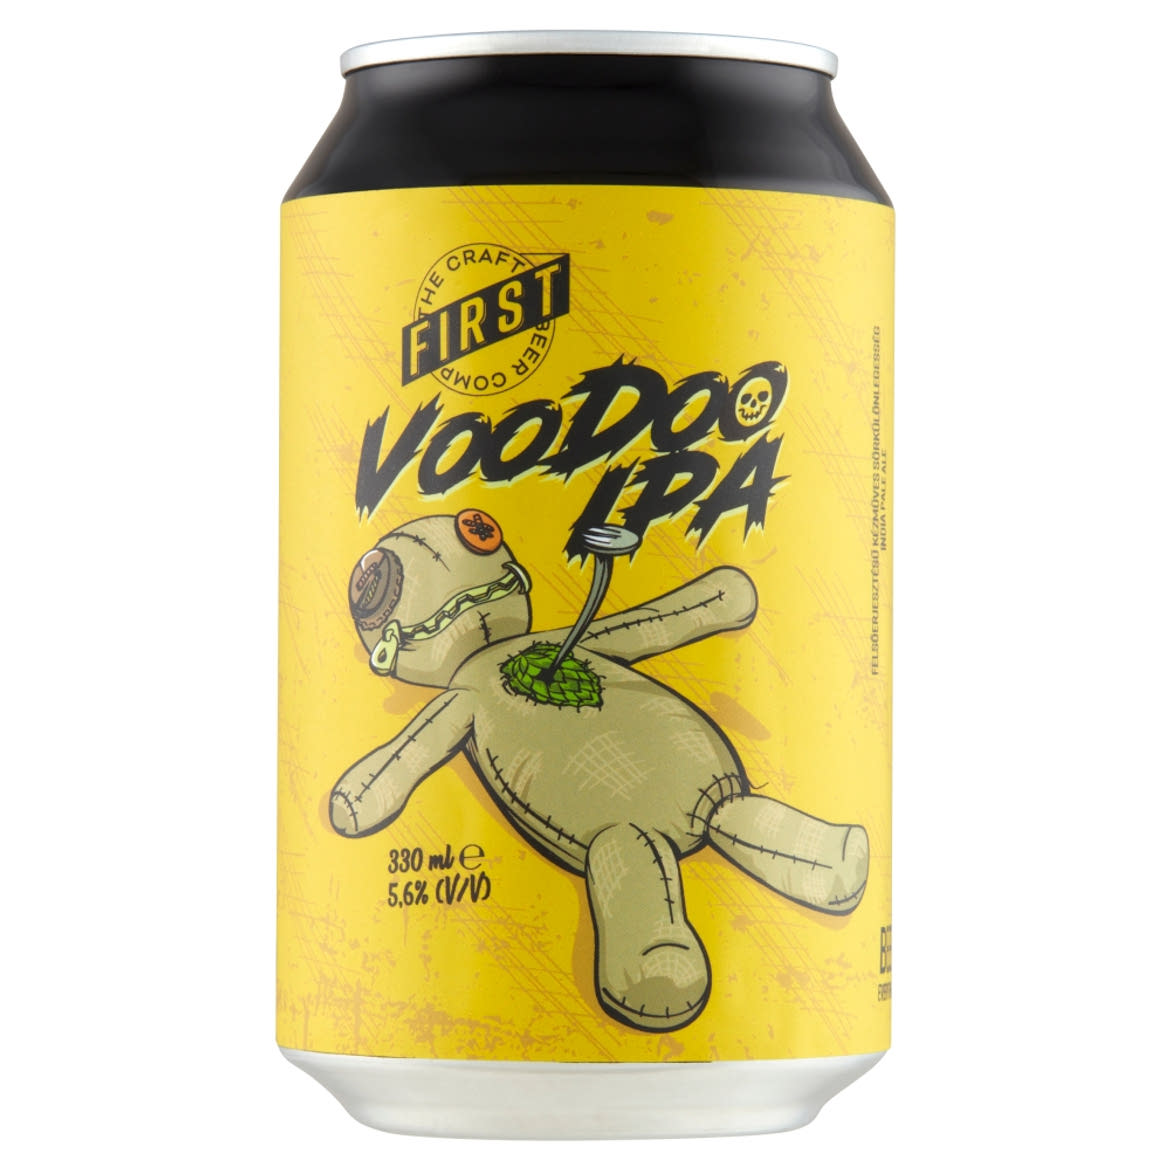 First Voodoo IPA felsőerjesztésű kézműves sörkülönlegesség 5,6% 330 ml